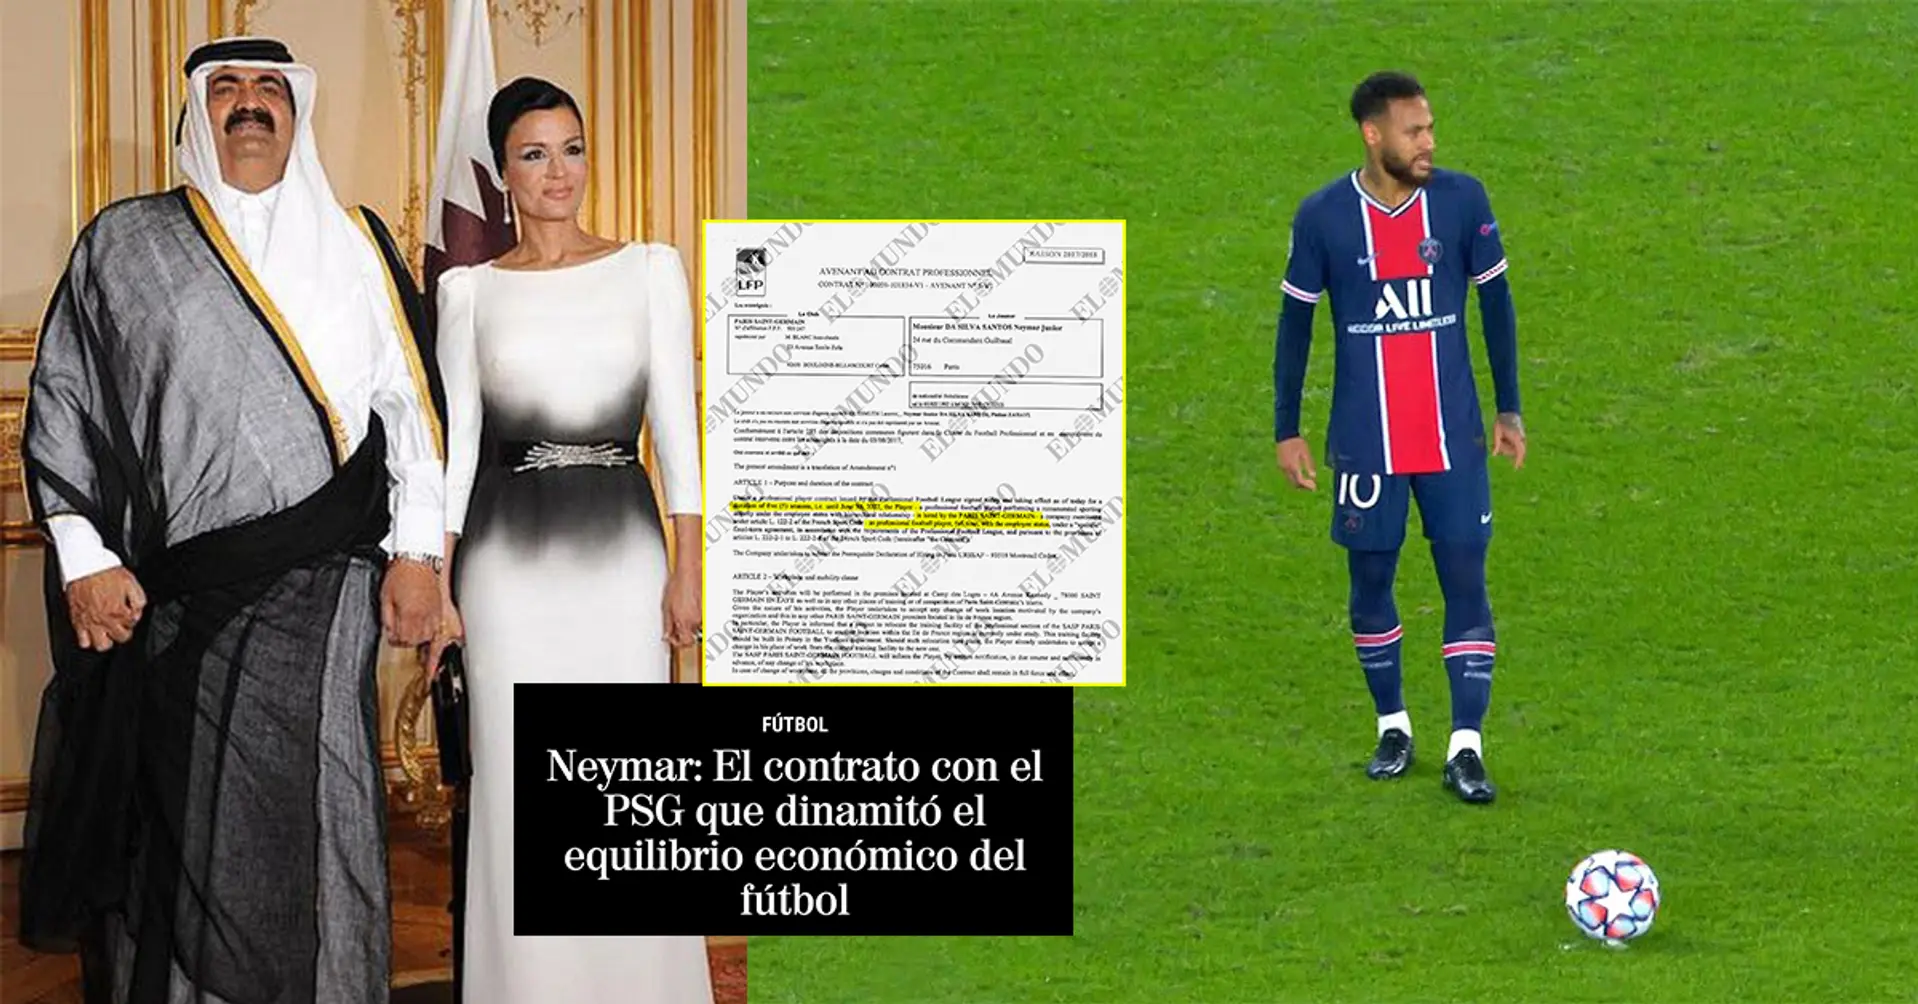 Il reale valore del contratto di Neymar con il PSG è stato rivelato, il brasiliano è costato una fortuna